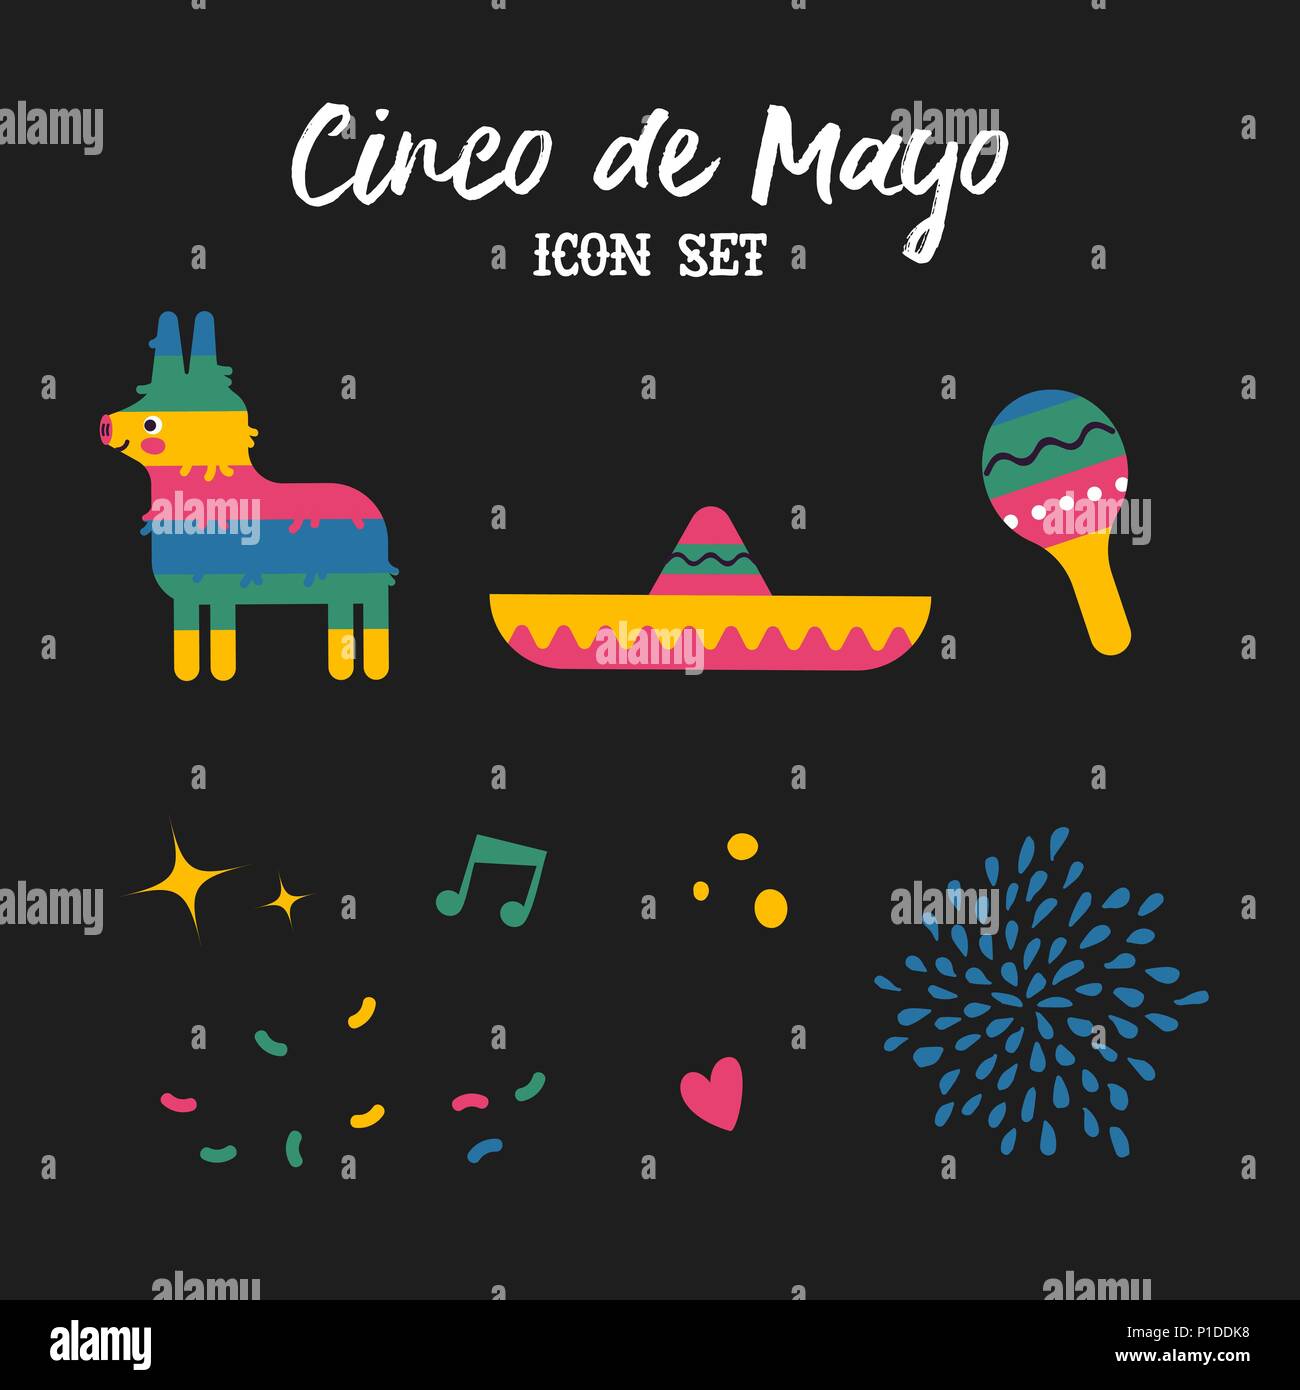 Cinco de Mayo isolato decorazione set. Festive mexican disegnati a mano include icone carino asino pinata, mariachi hat e maracas. EPS10 vettore. Illustrazione Vettoriale